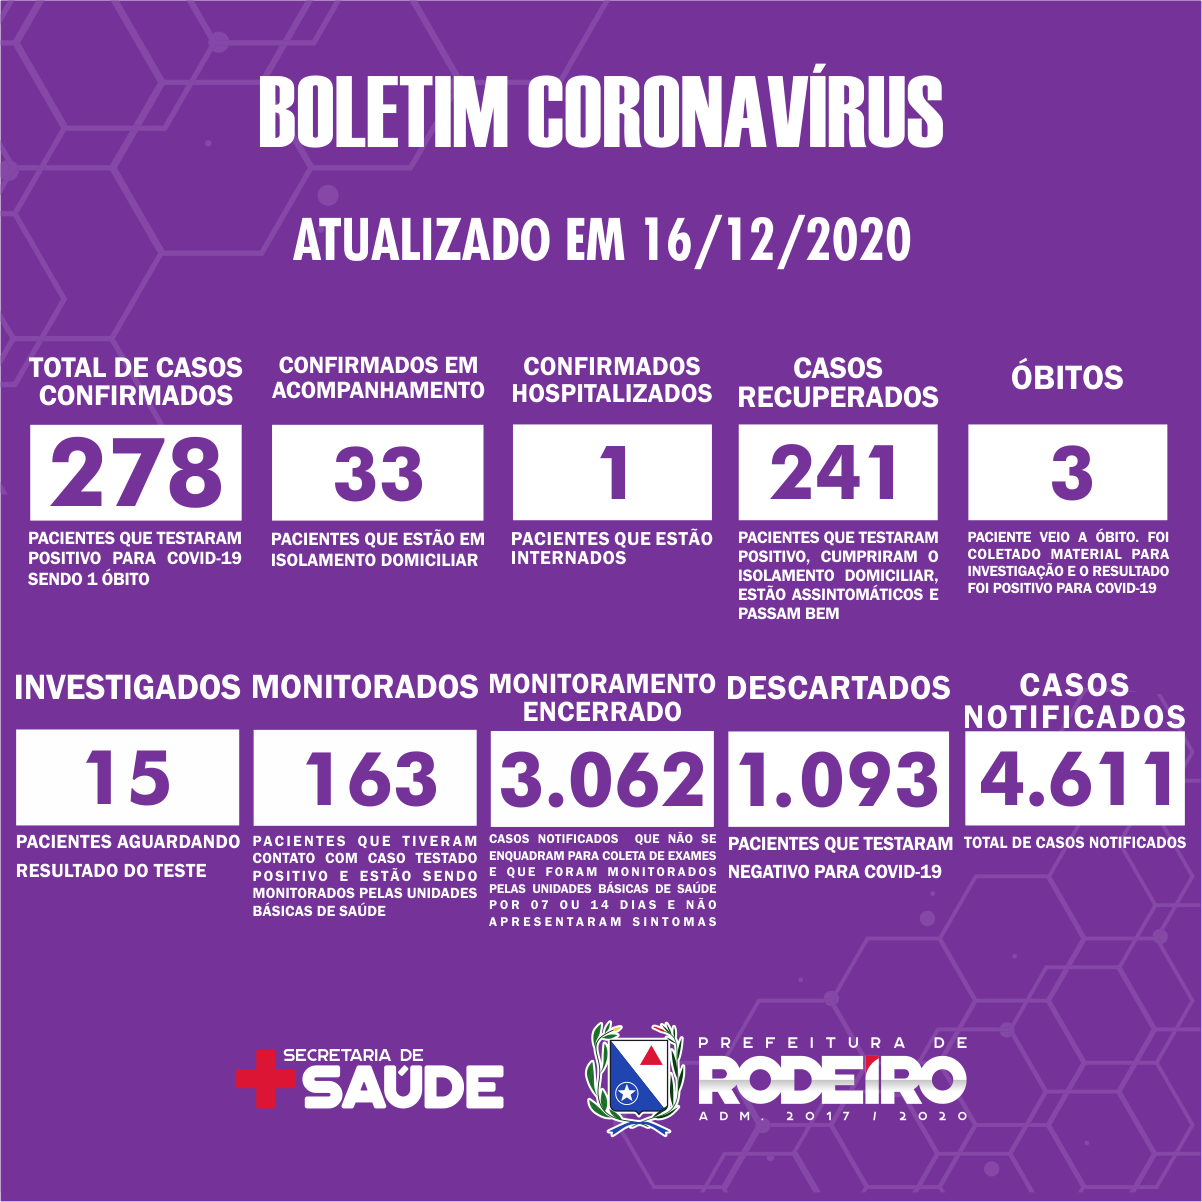 Boletim Epidemiológico do Município de Rodeiro sobre coronavírus, atualizado em 16/12/2020